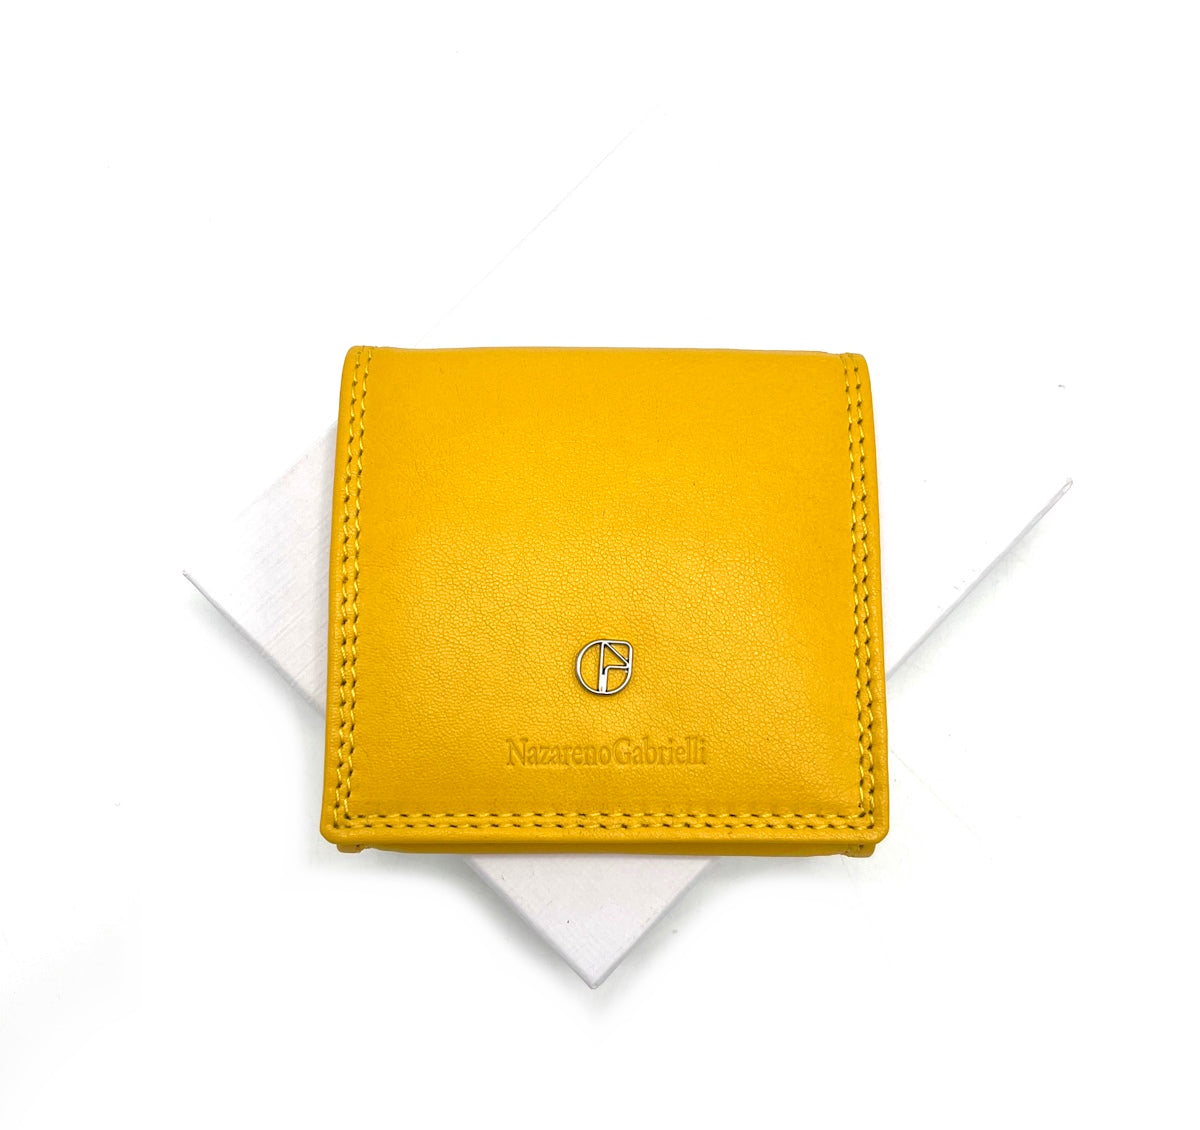 Genuine leather coin purse, N.Gabrielli, art. PDK391-13